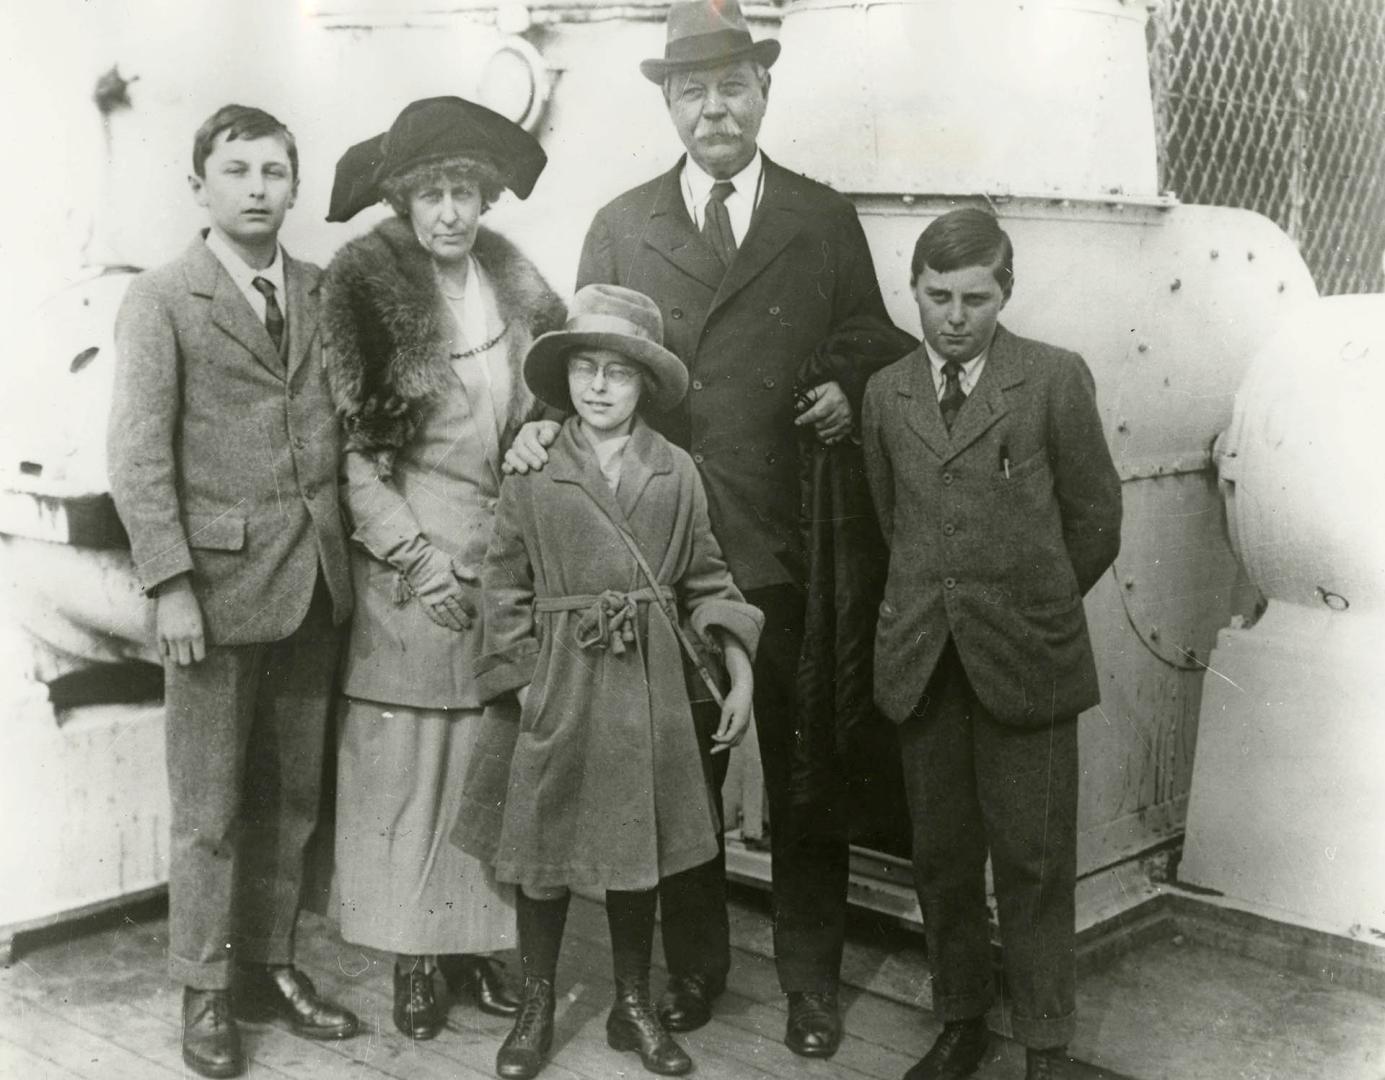 Arthur Conan Doyle and family arrive in New York, 1923